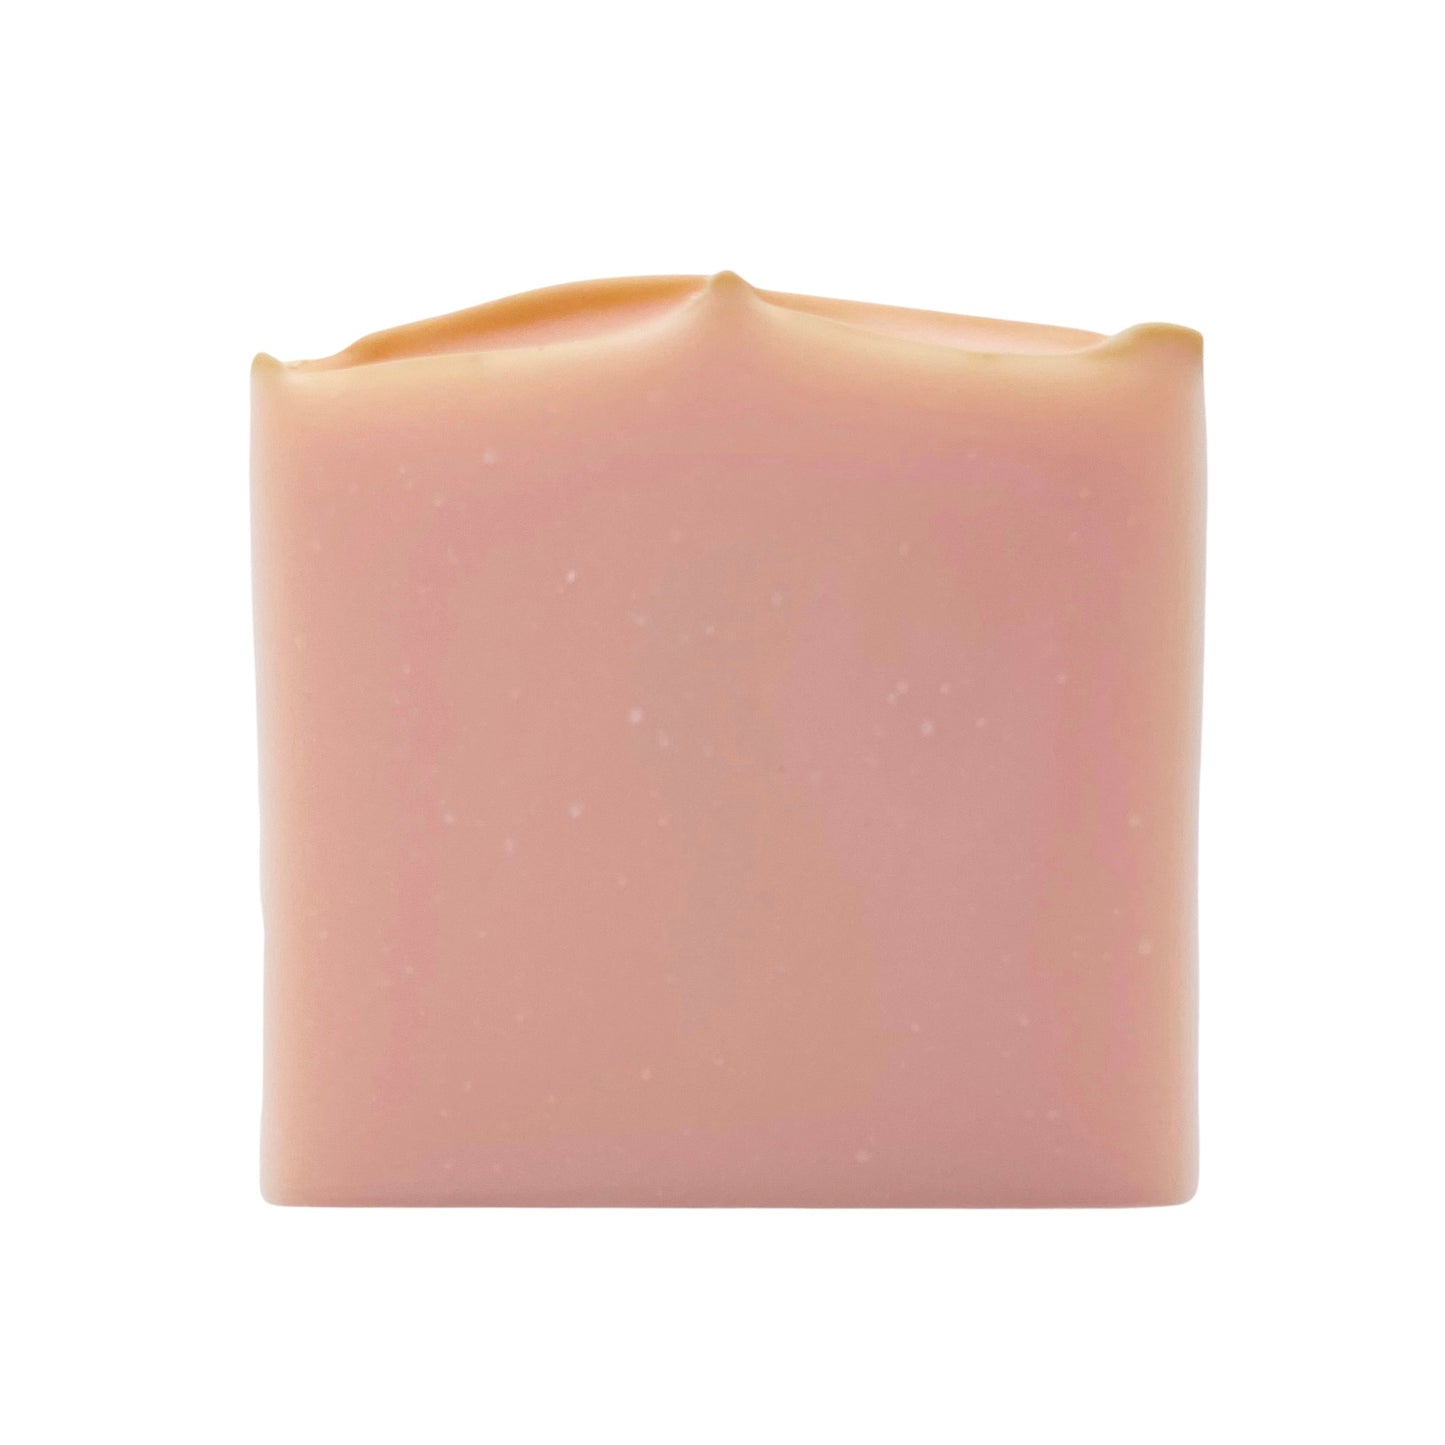 Collagen Soap With Vitamin C + E